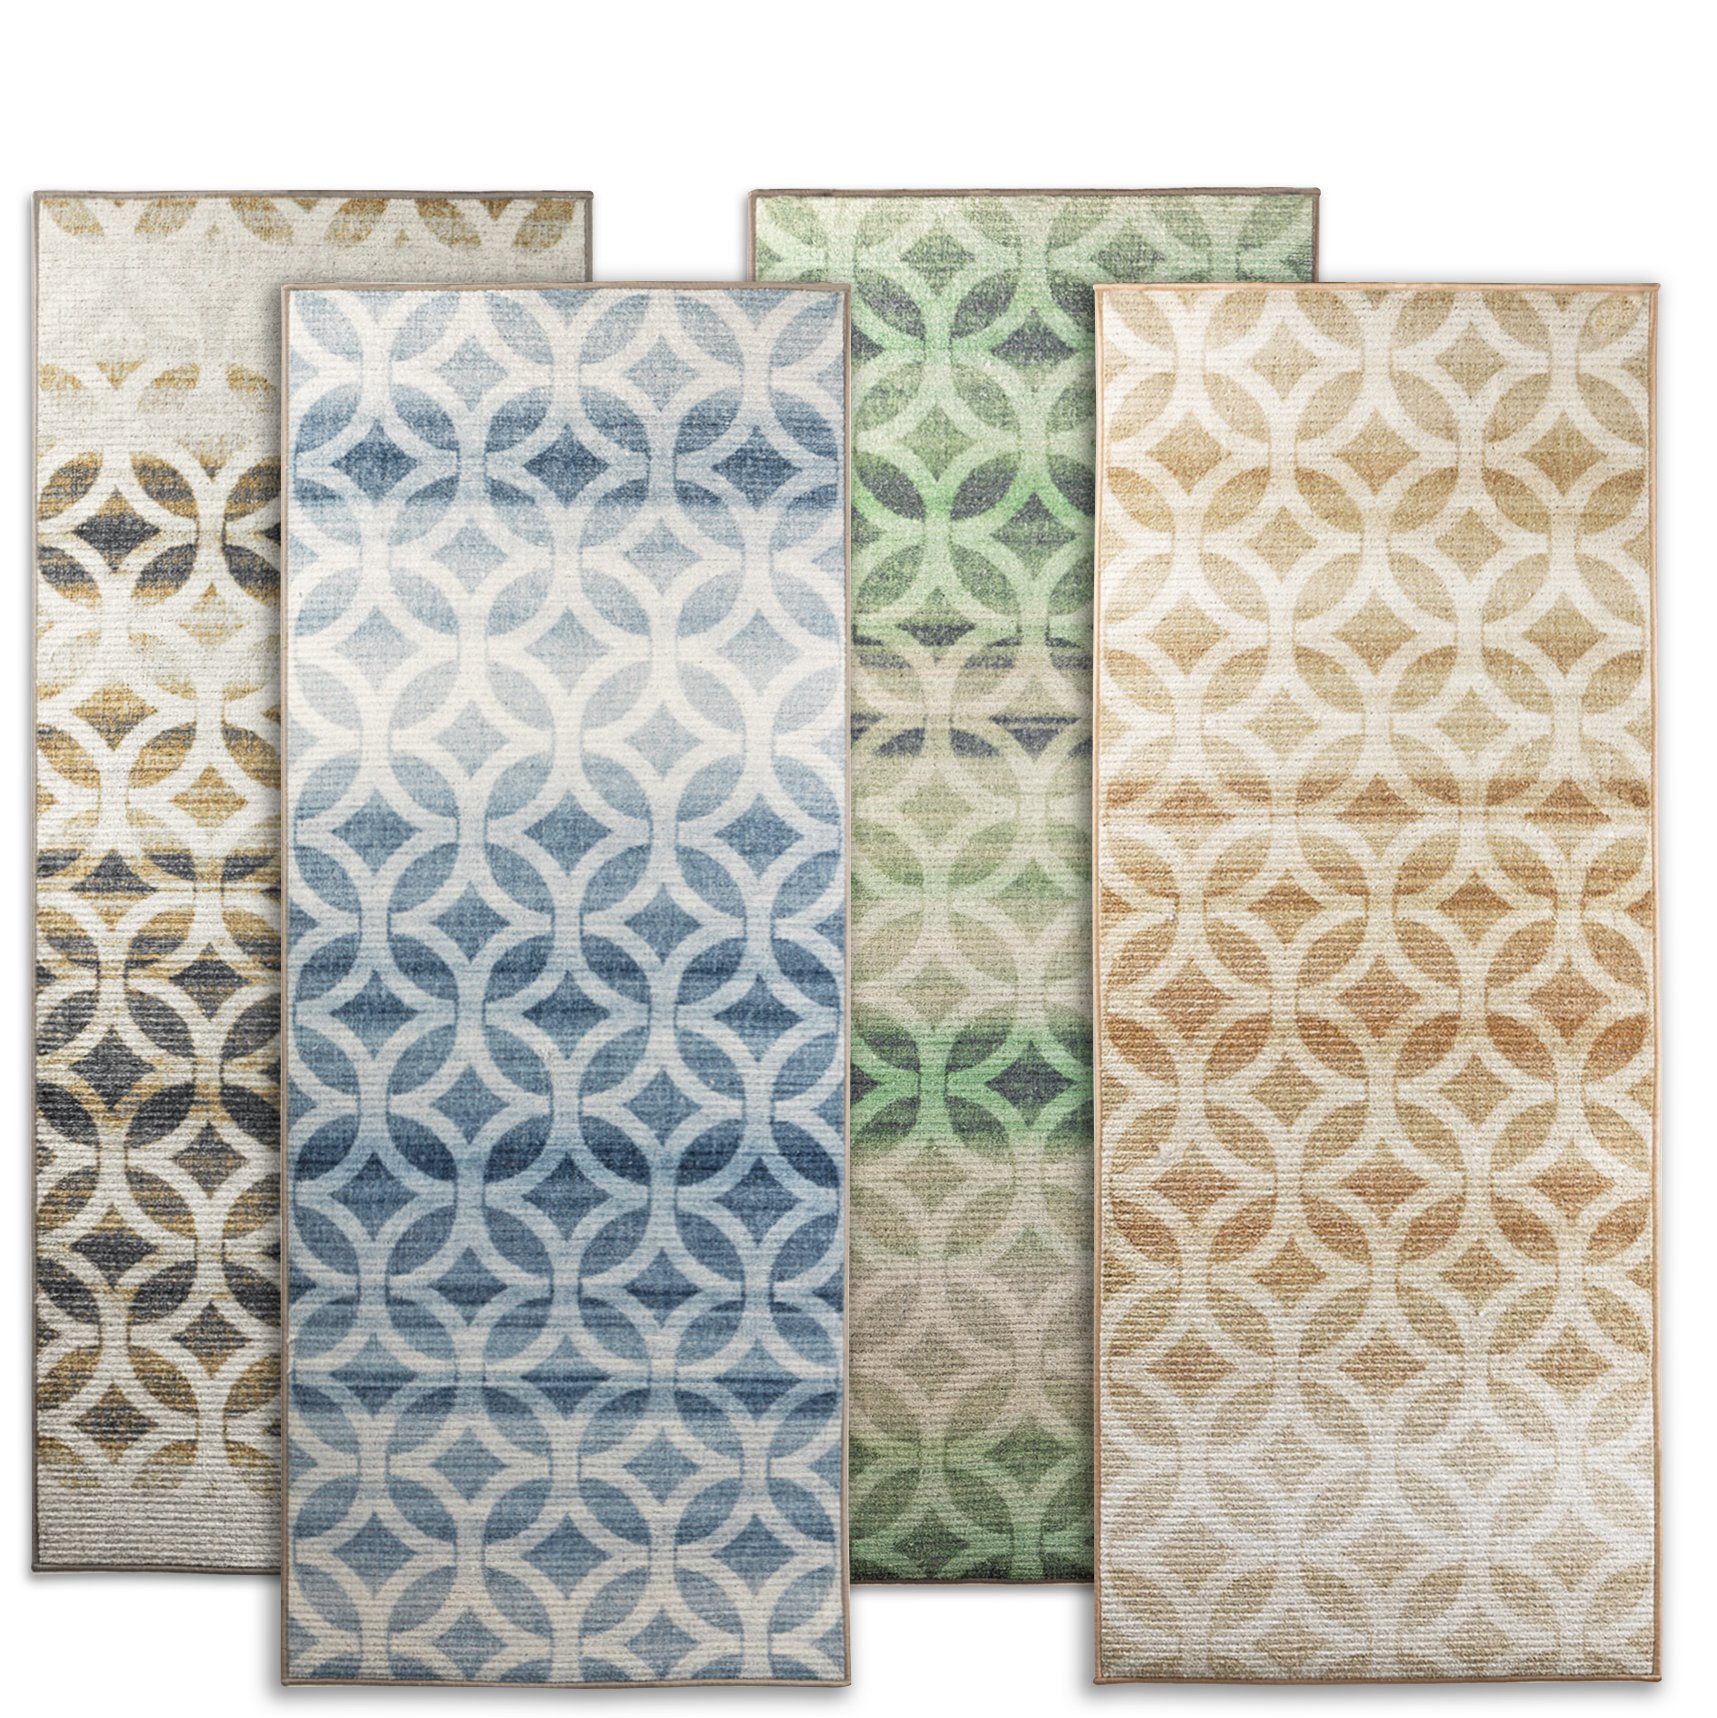 Teppich erhältlich Braun vier Farben Murcia, Wohnteppich, Moderner In Karat, Teppich-Läufer